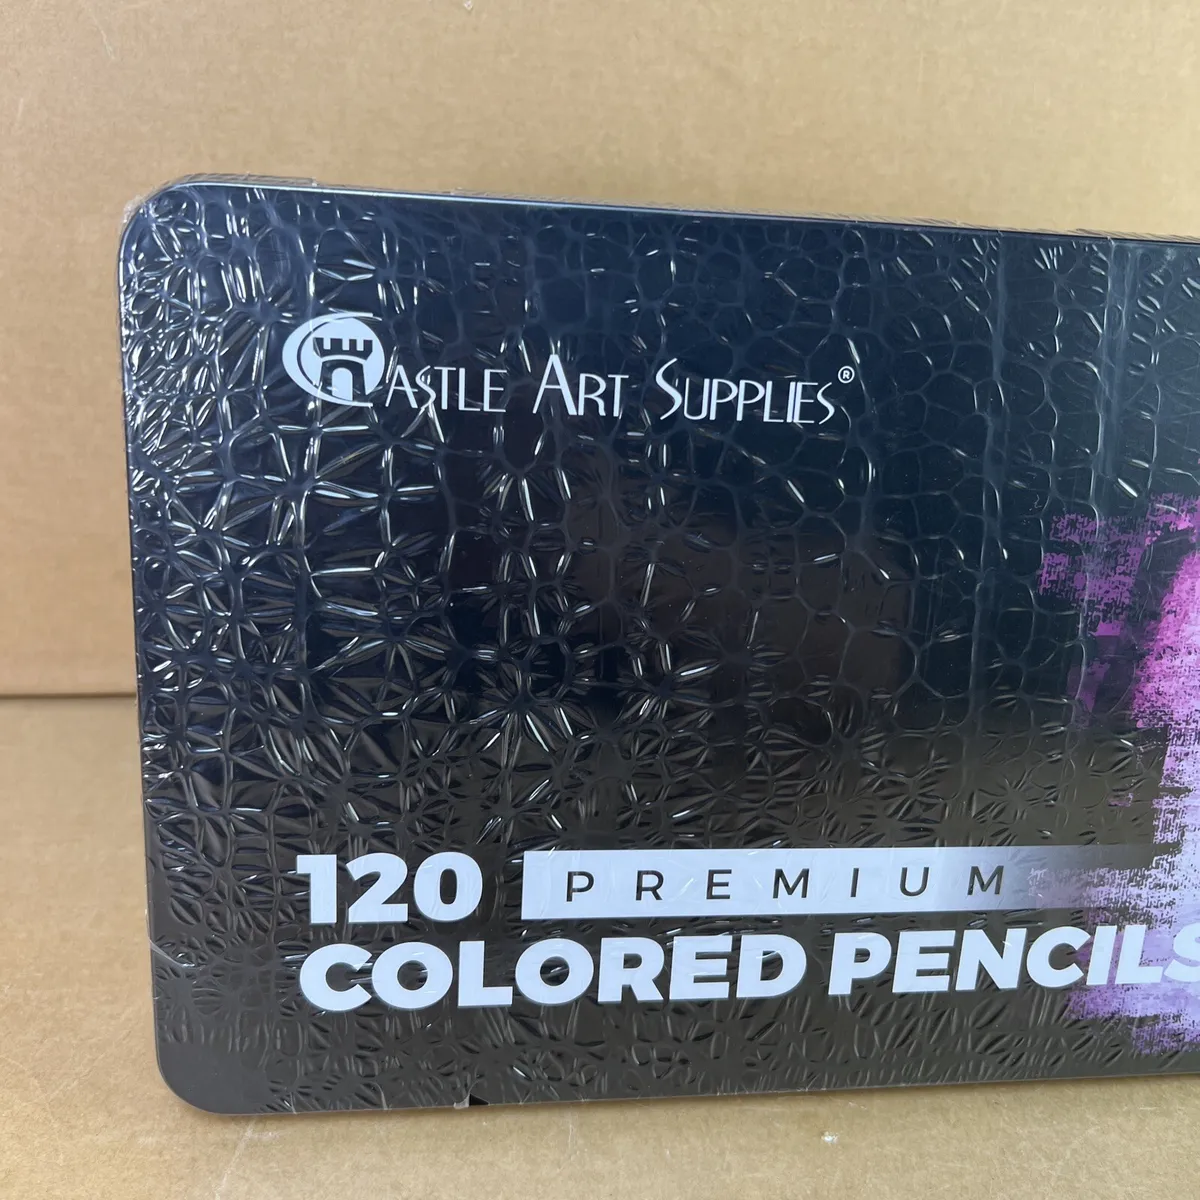 Castle Art Supplies 120 Colored Pencils + Sketchbooks Bundle | Premium  Adult Coloring Pencils with Convenient Zip Case Plus Drawing Paper |  Perfect